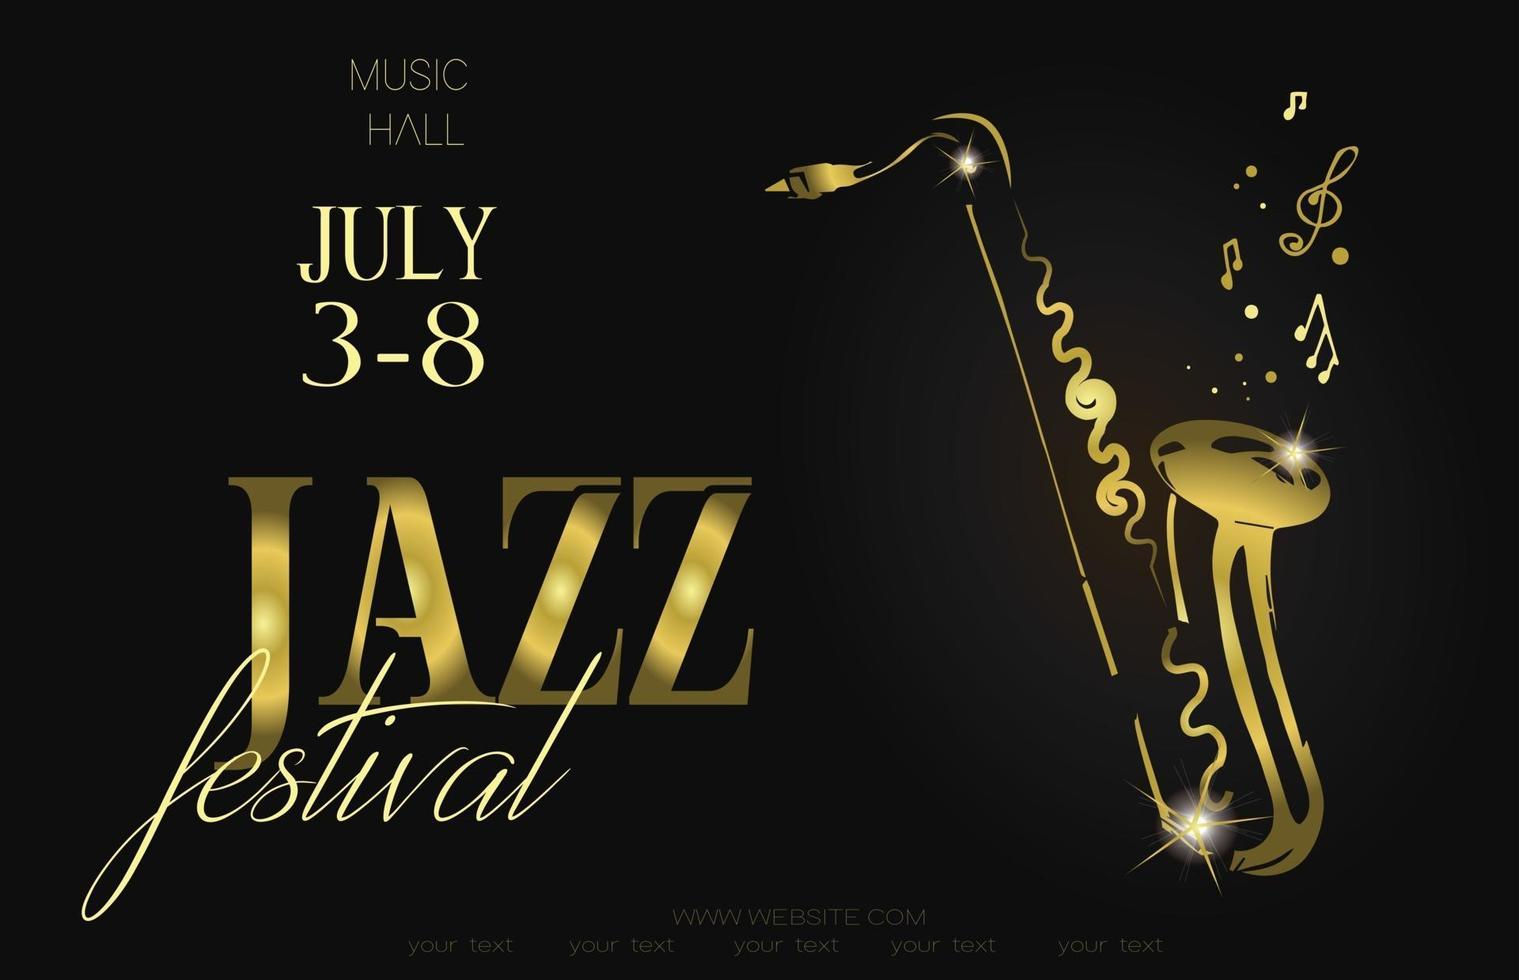 modelo de fundo de cartaz de festival de música jazz saxofone com notas musicais design de vetor de folheto